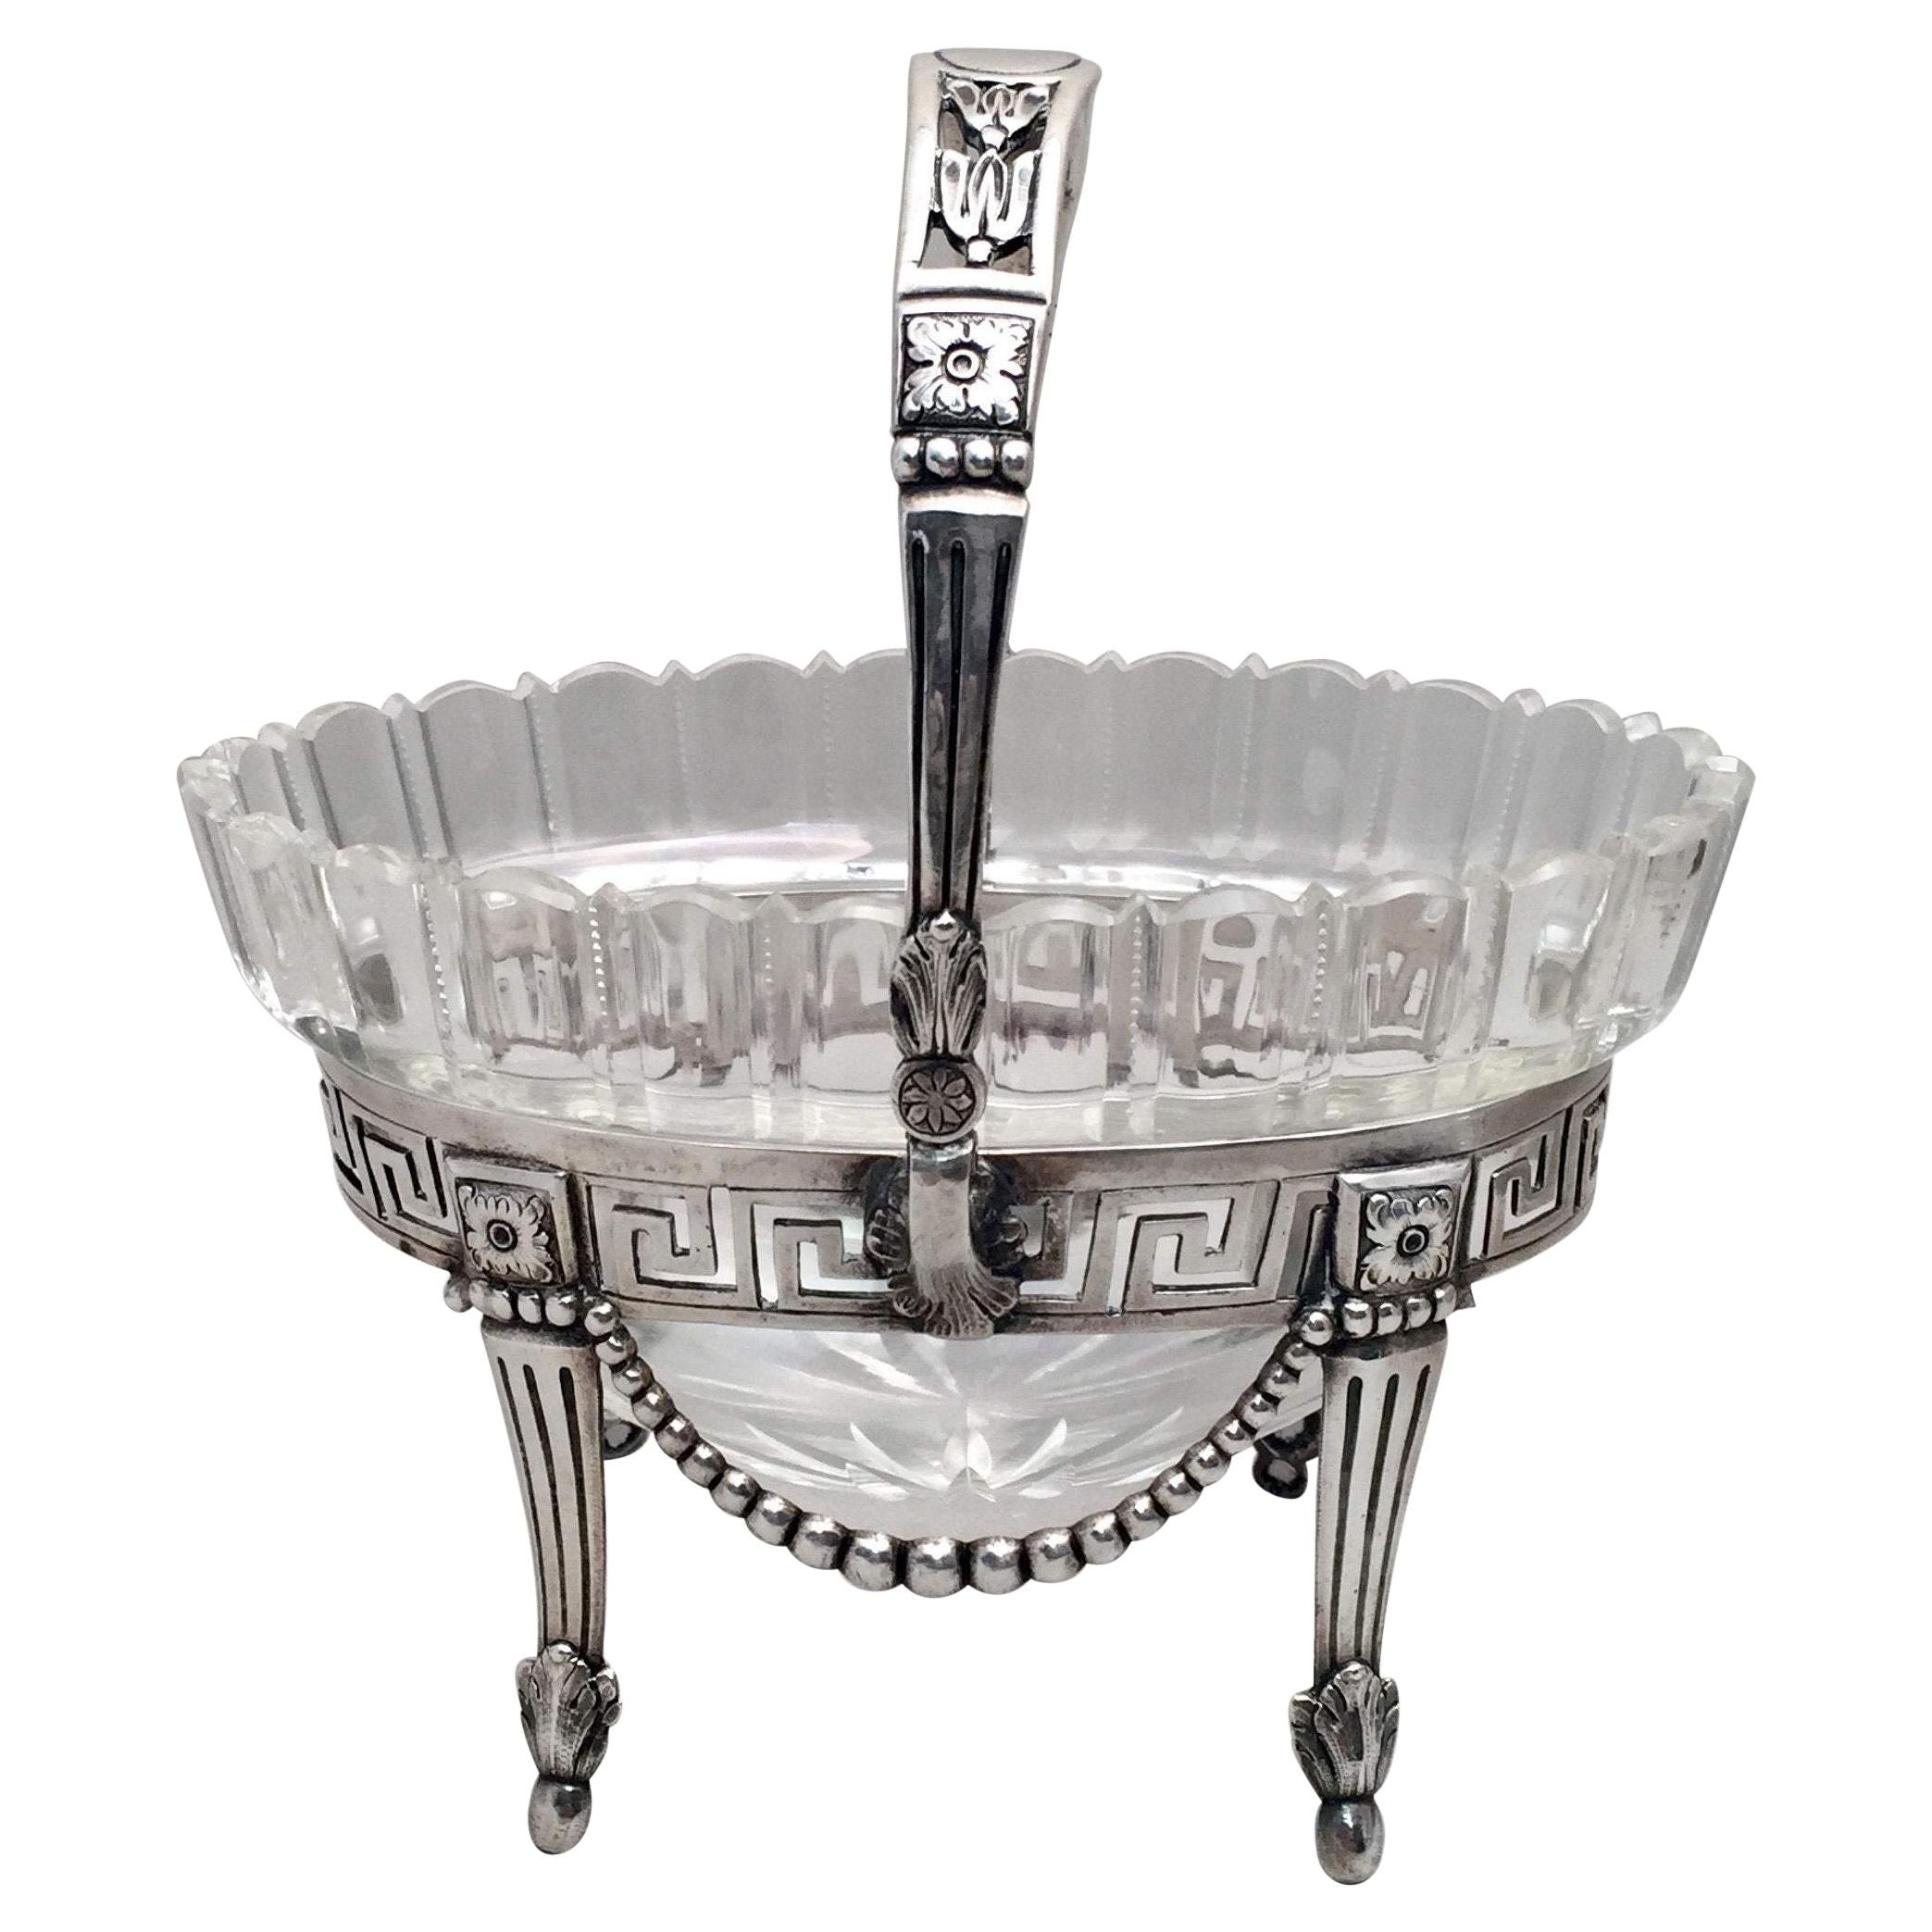 Brautkorb-Schale aus Silber und Glas mit Münzmünze